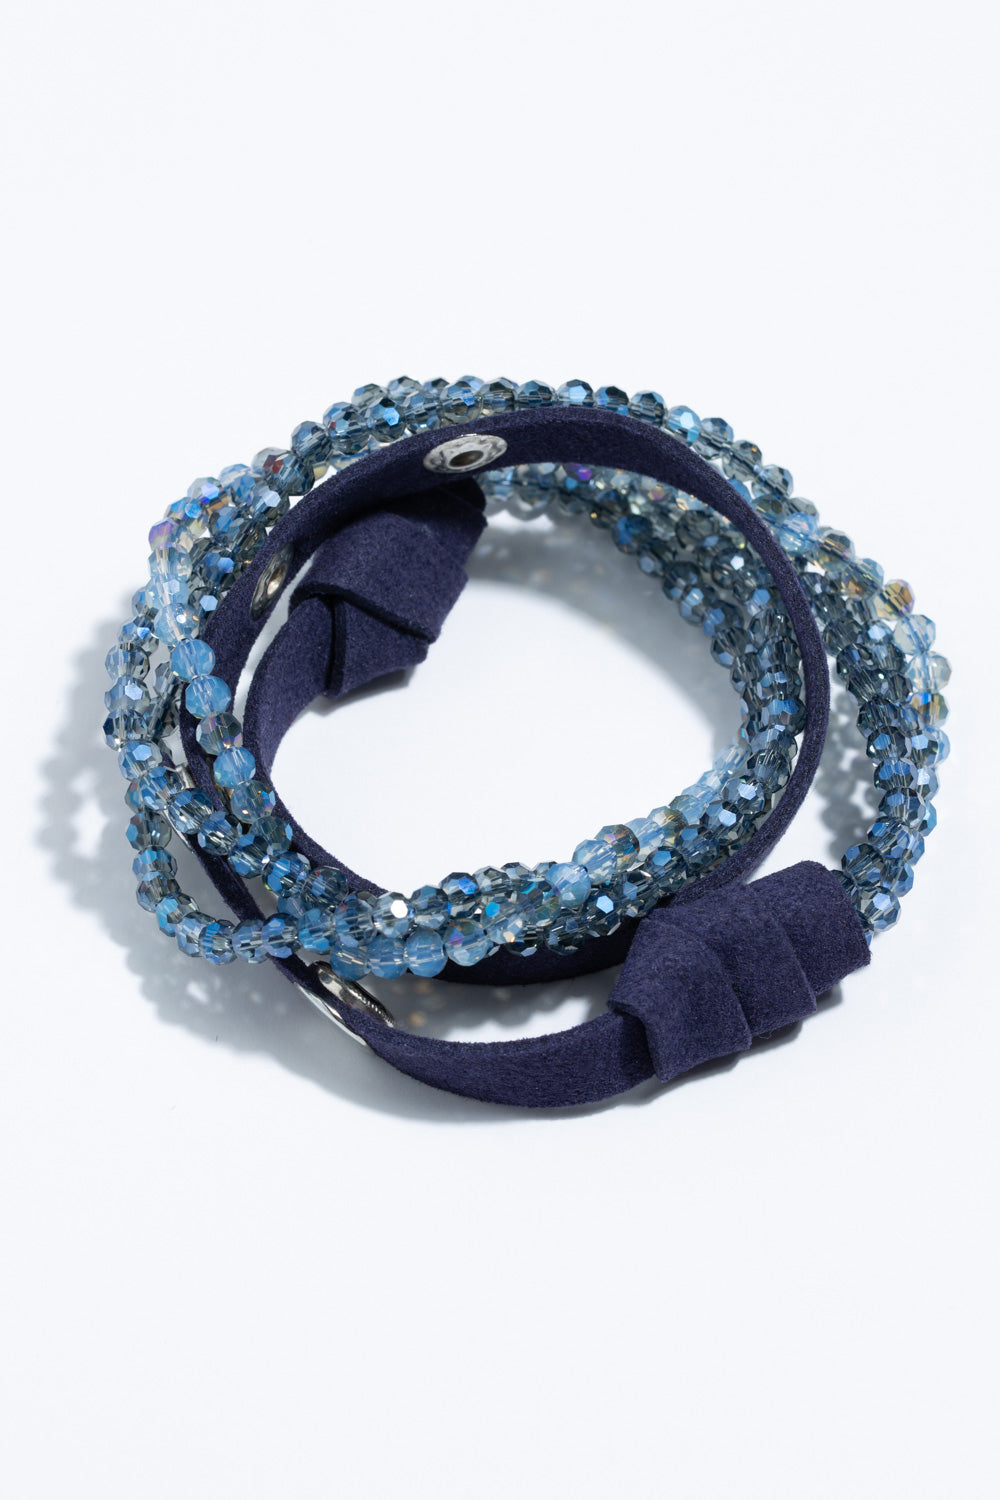 Type 2 Night Sky Bracelet/ Necklace